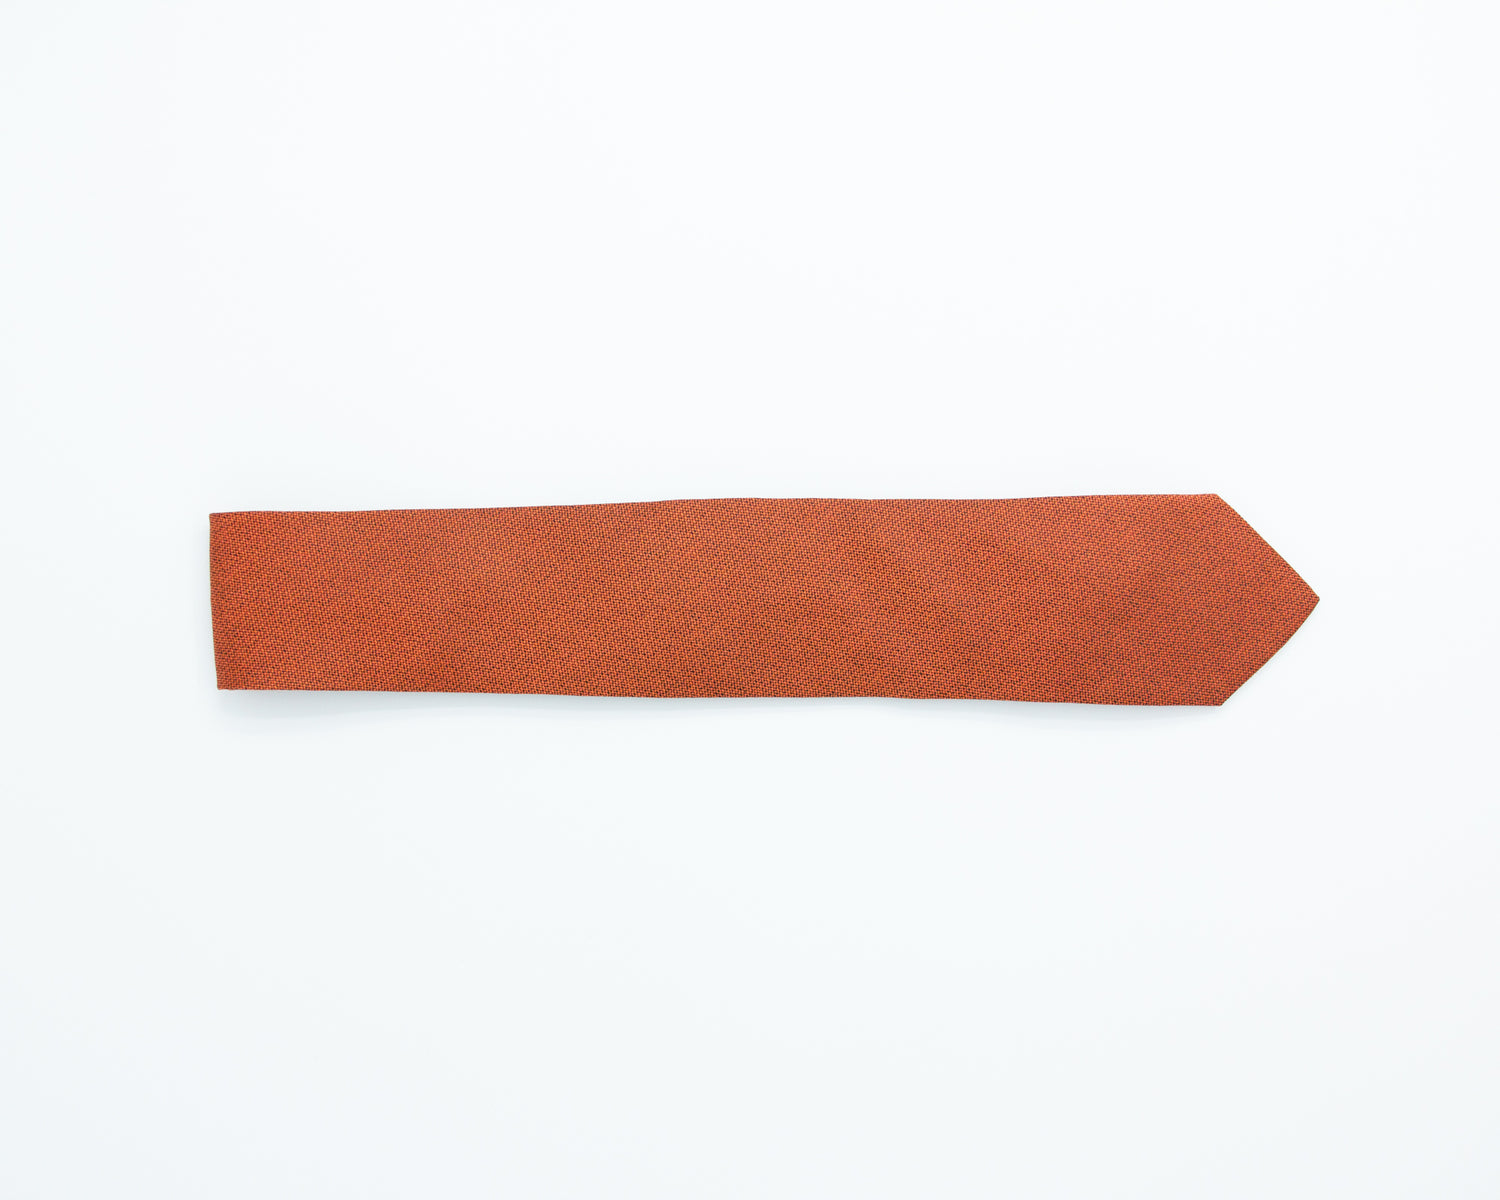 Turo Fine Grenadine Silk Tie in Orange (8402349785418)